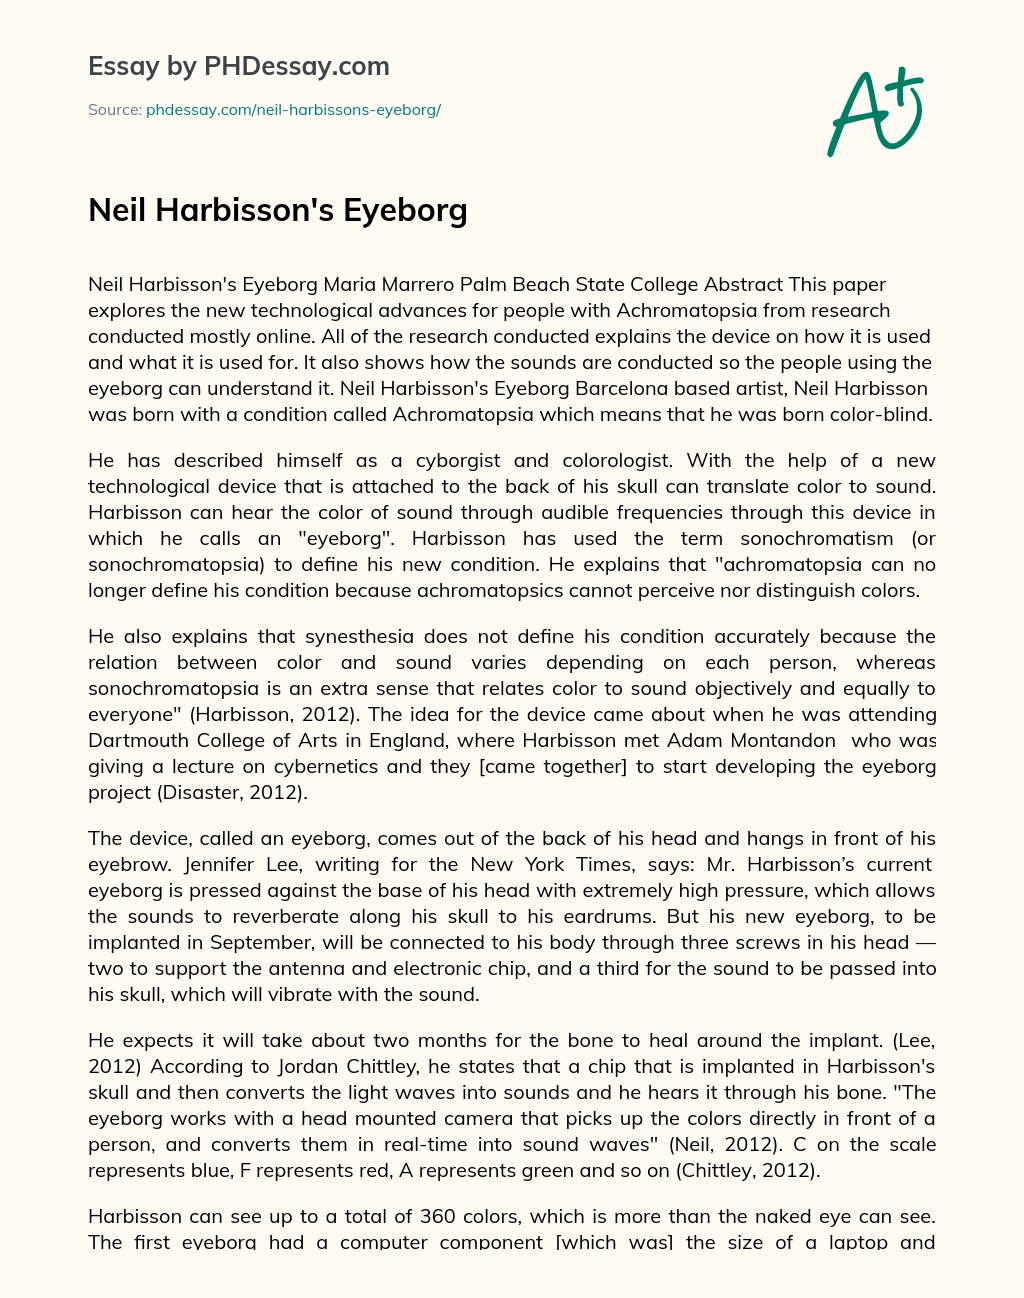 Neil Harbisson’s Eyeborg essay